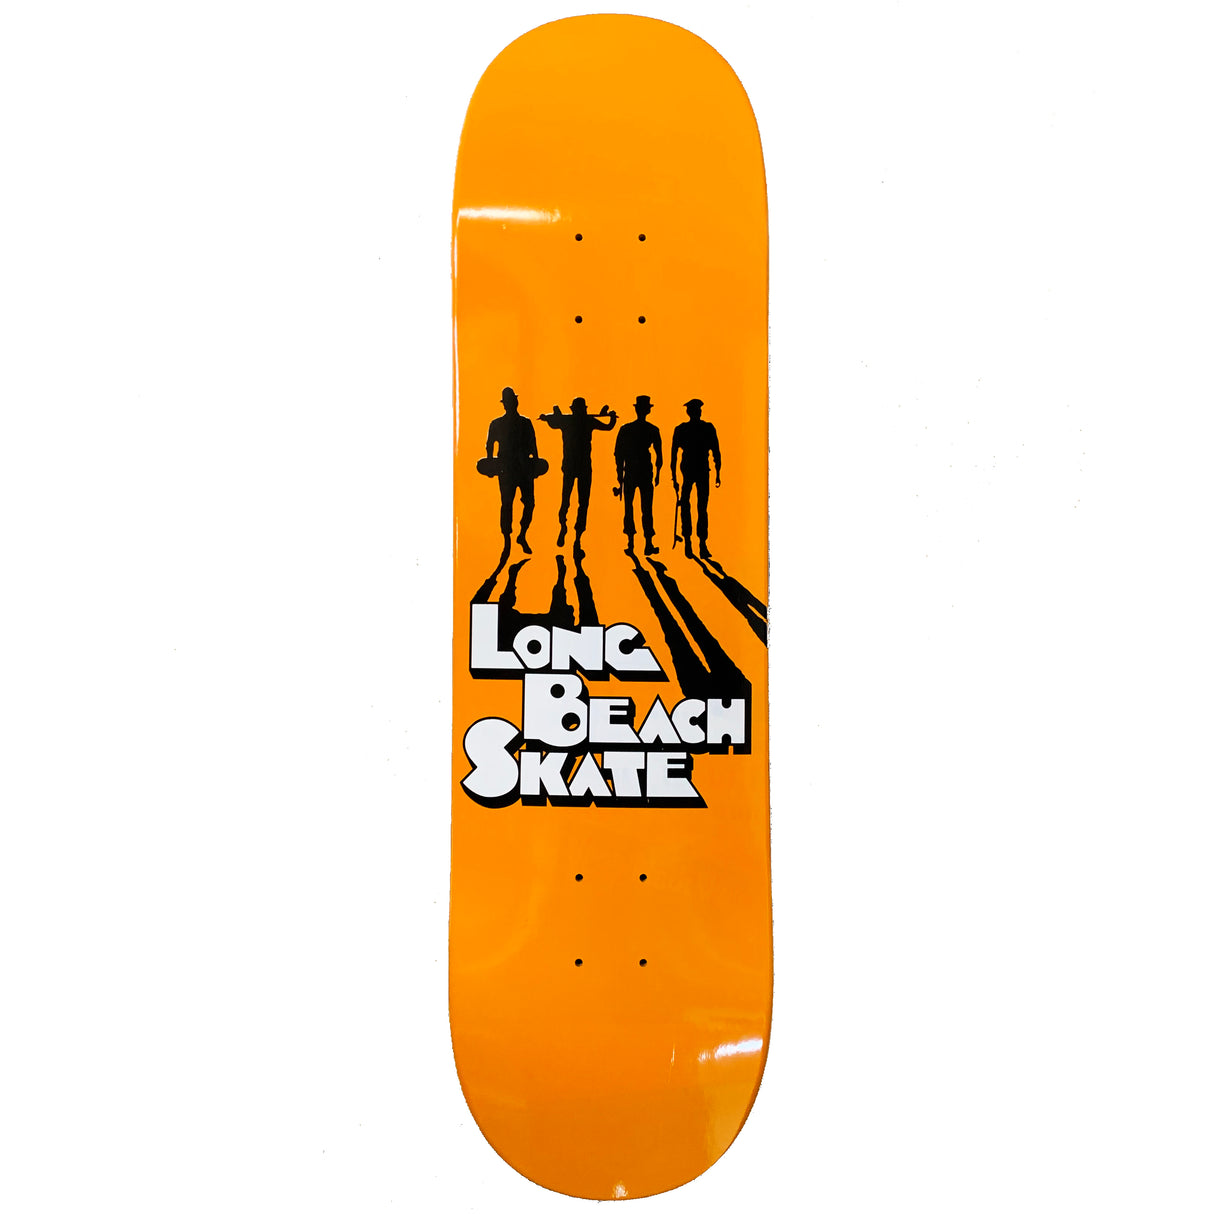 Long Beach Skate Co. Like Clockwork 7.5" Skateboard Deck